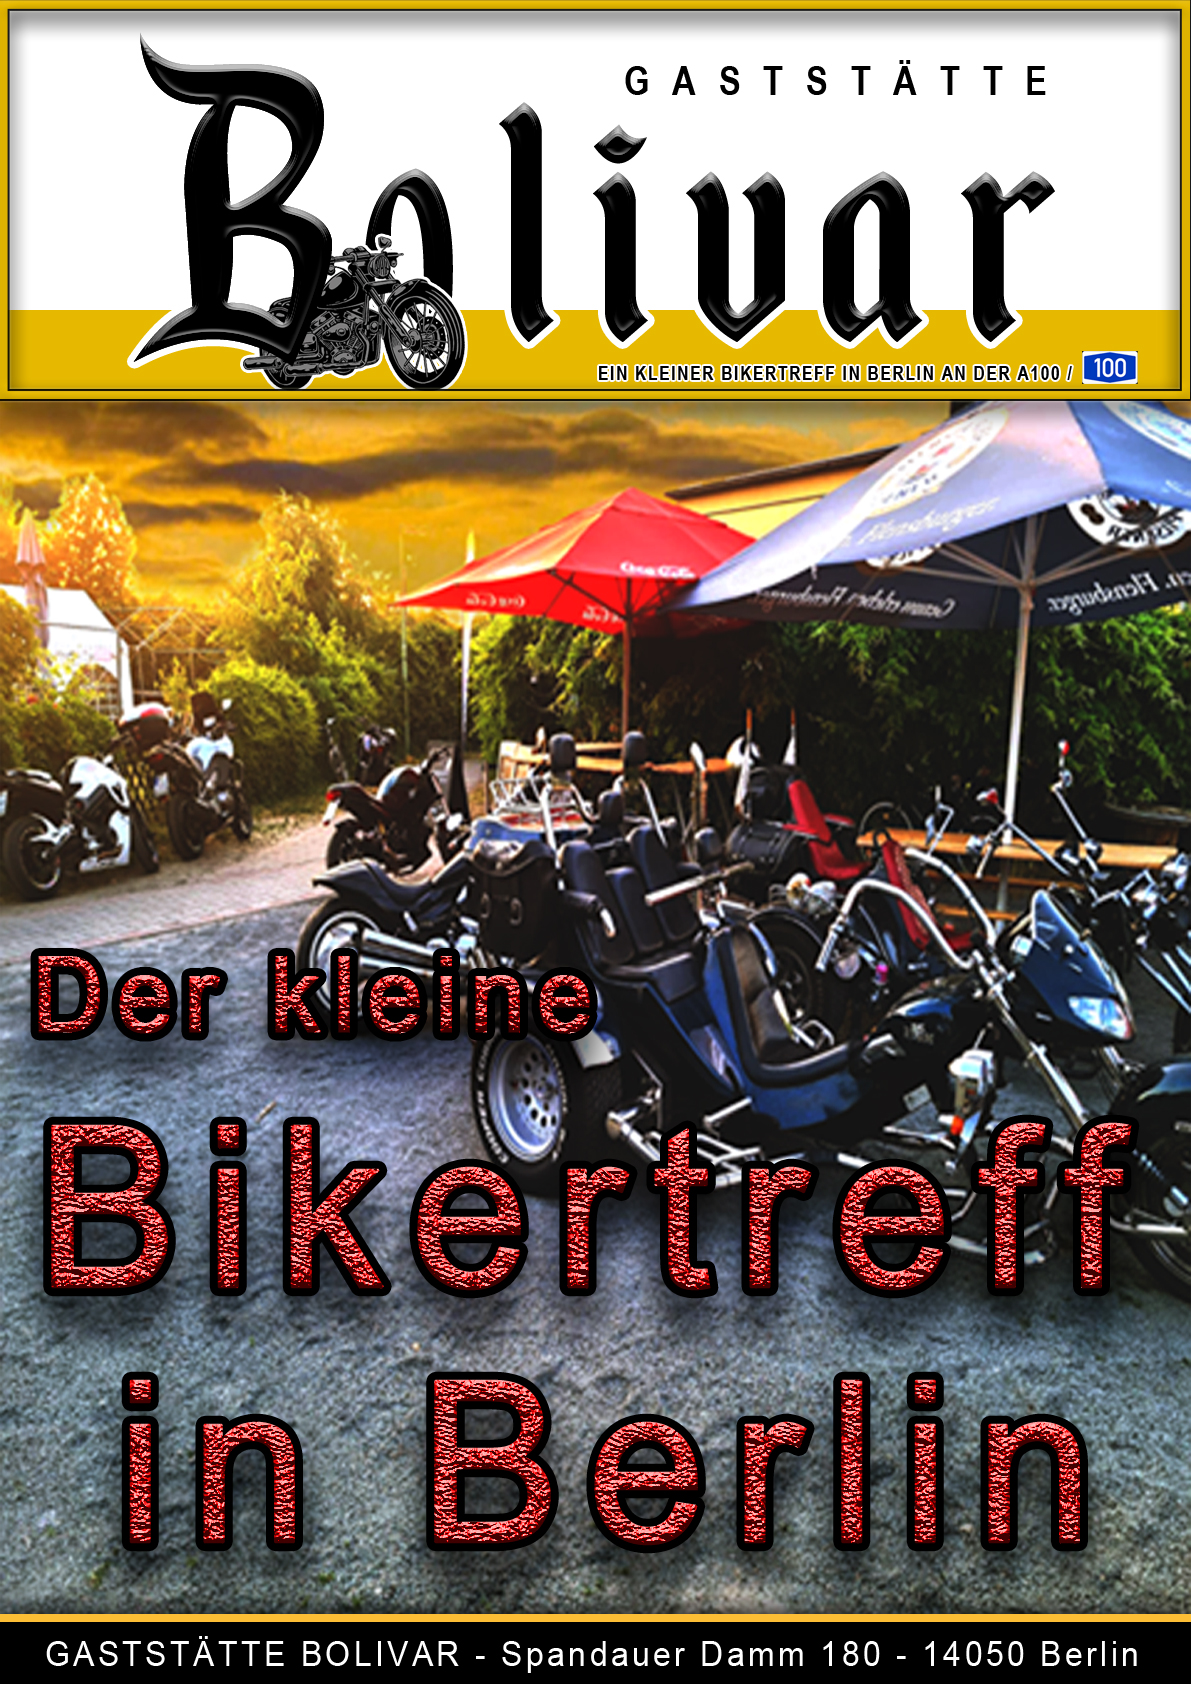 bolivar-berlin-charlottenburg-biker-bikerin-treff-a100-avus-treffpunkt-biergarten-imbiss-gaststaette-lokal-kaffee-kuchen-Westend